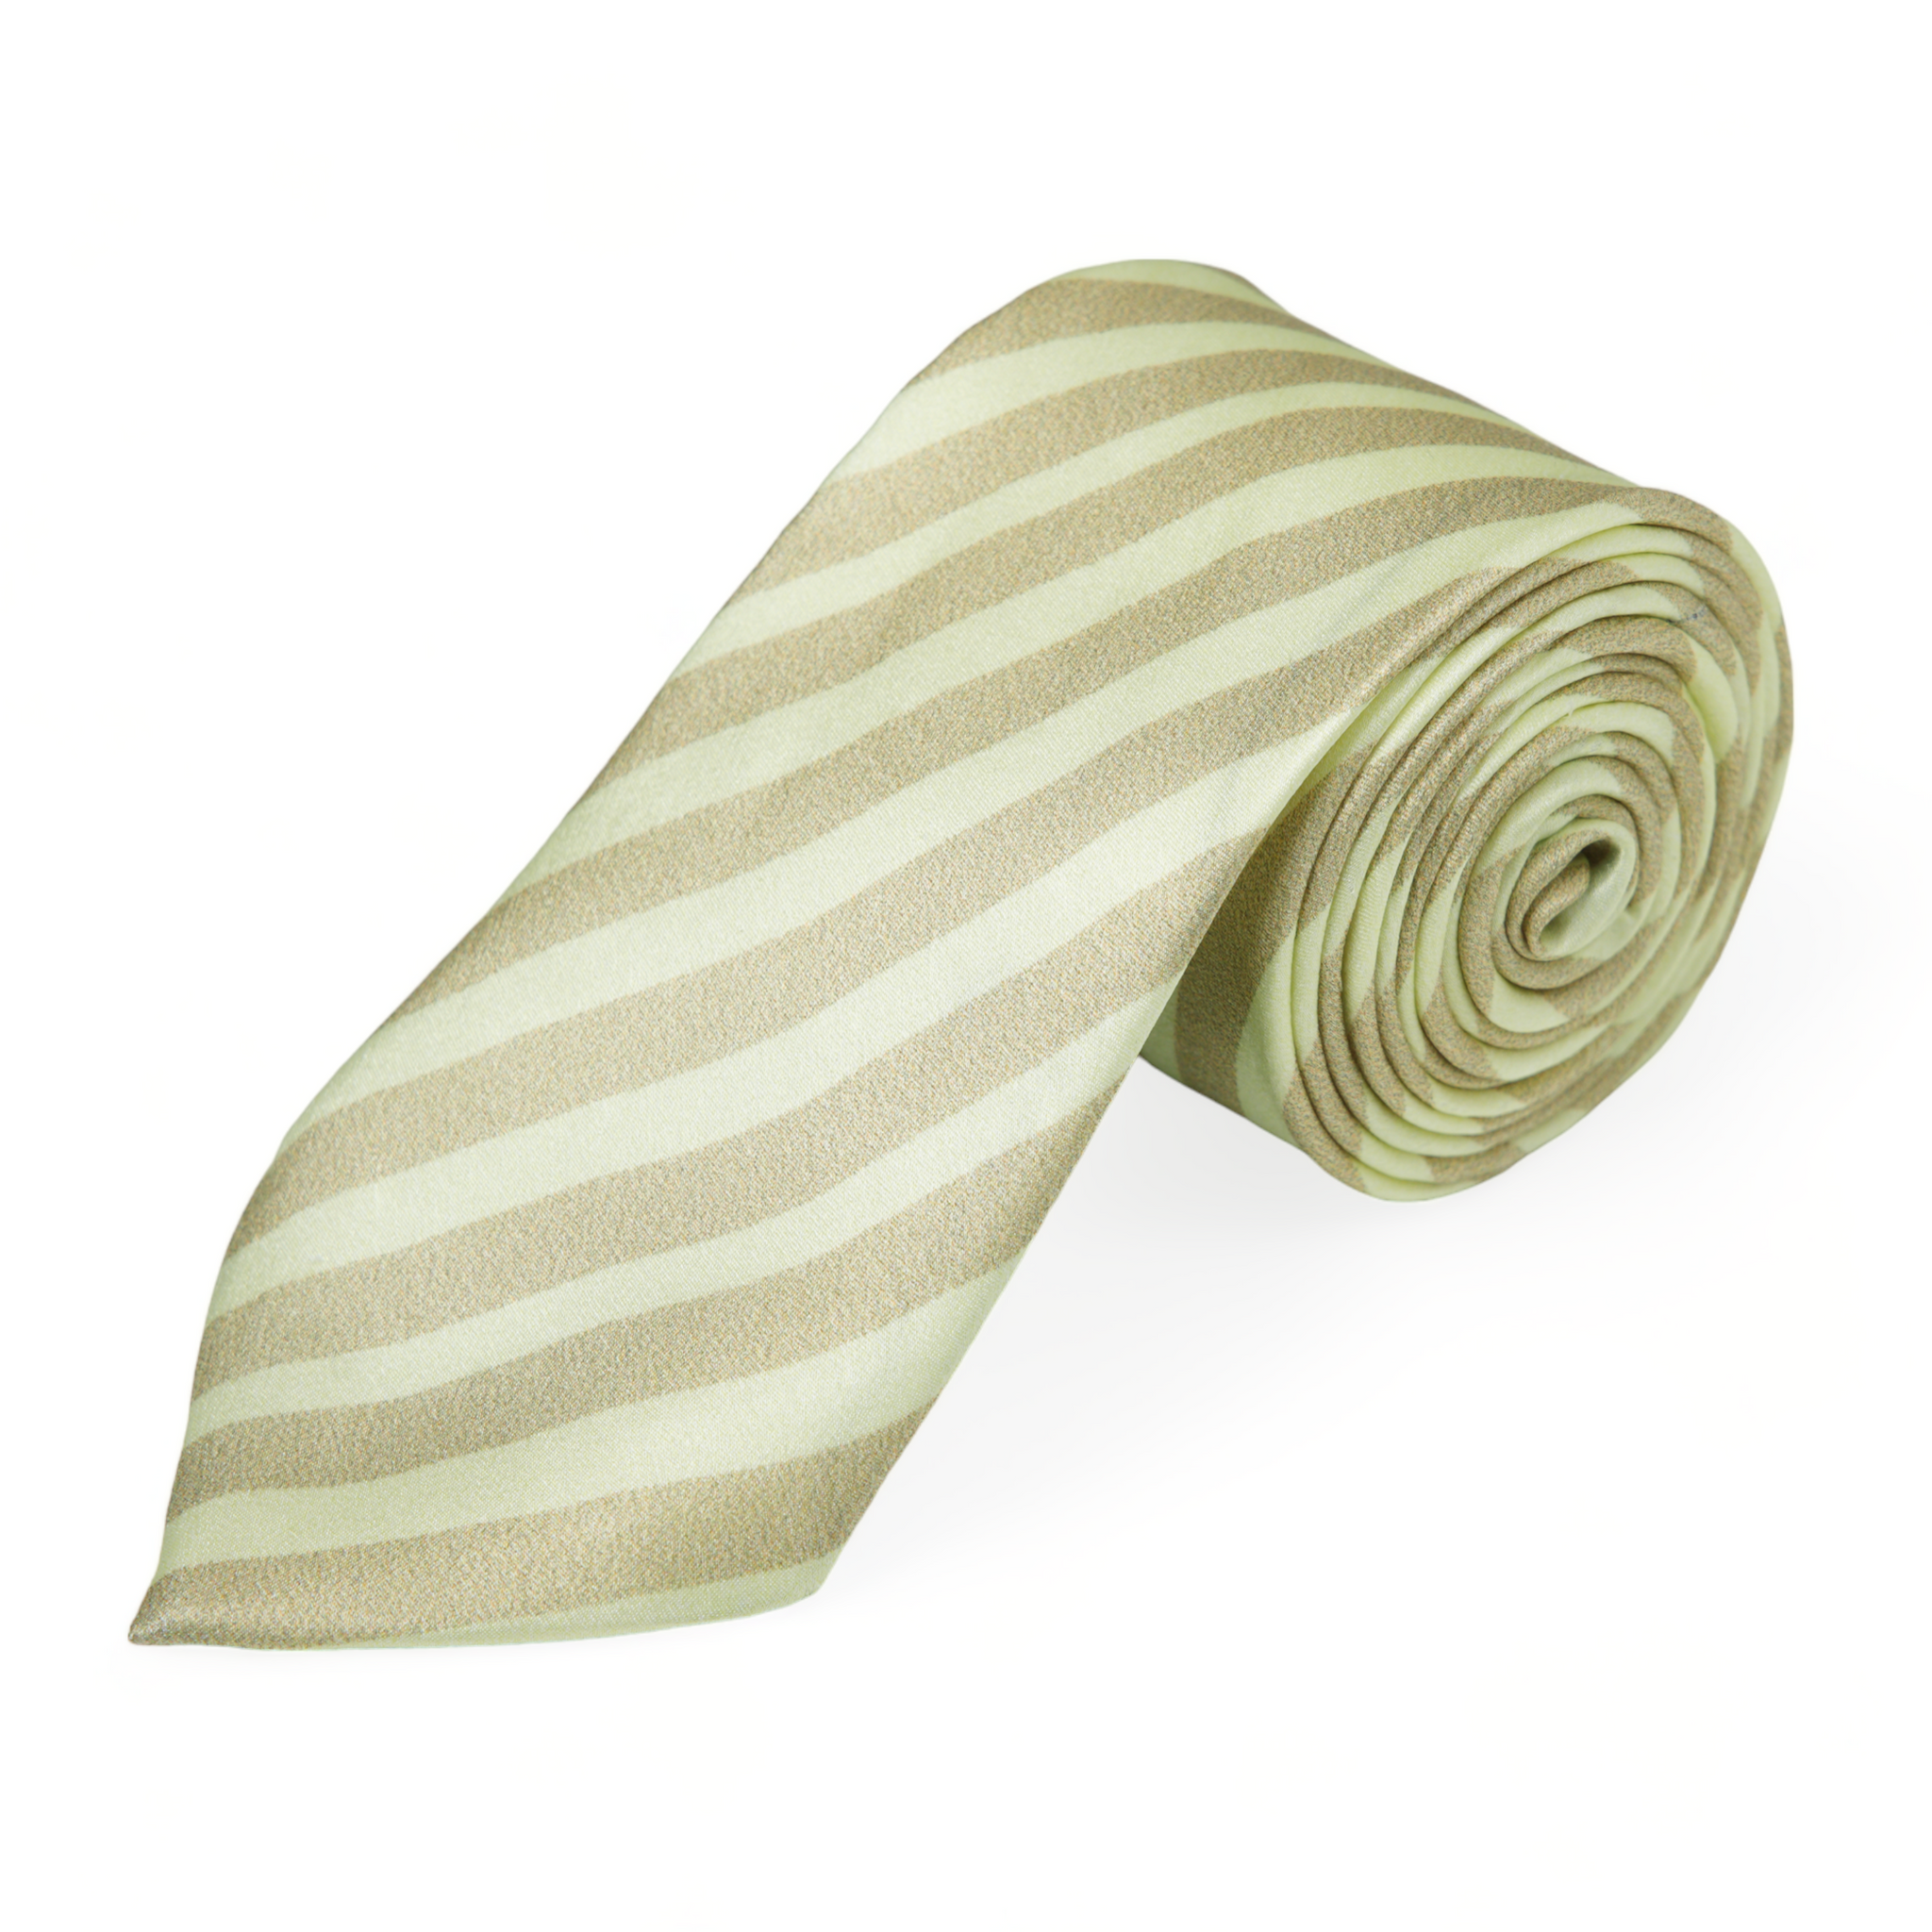 Chokore Off-White & Beige Stripes Silk Necktie - Plaids Range